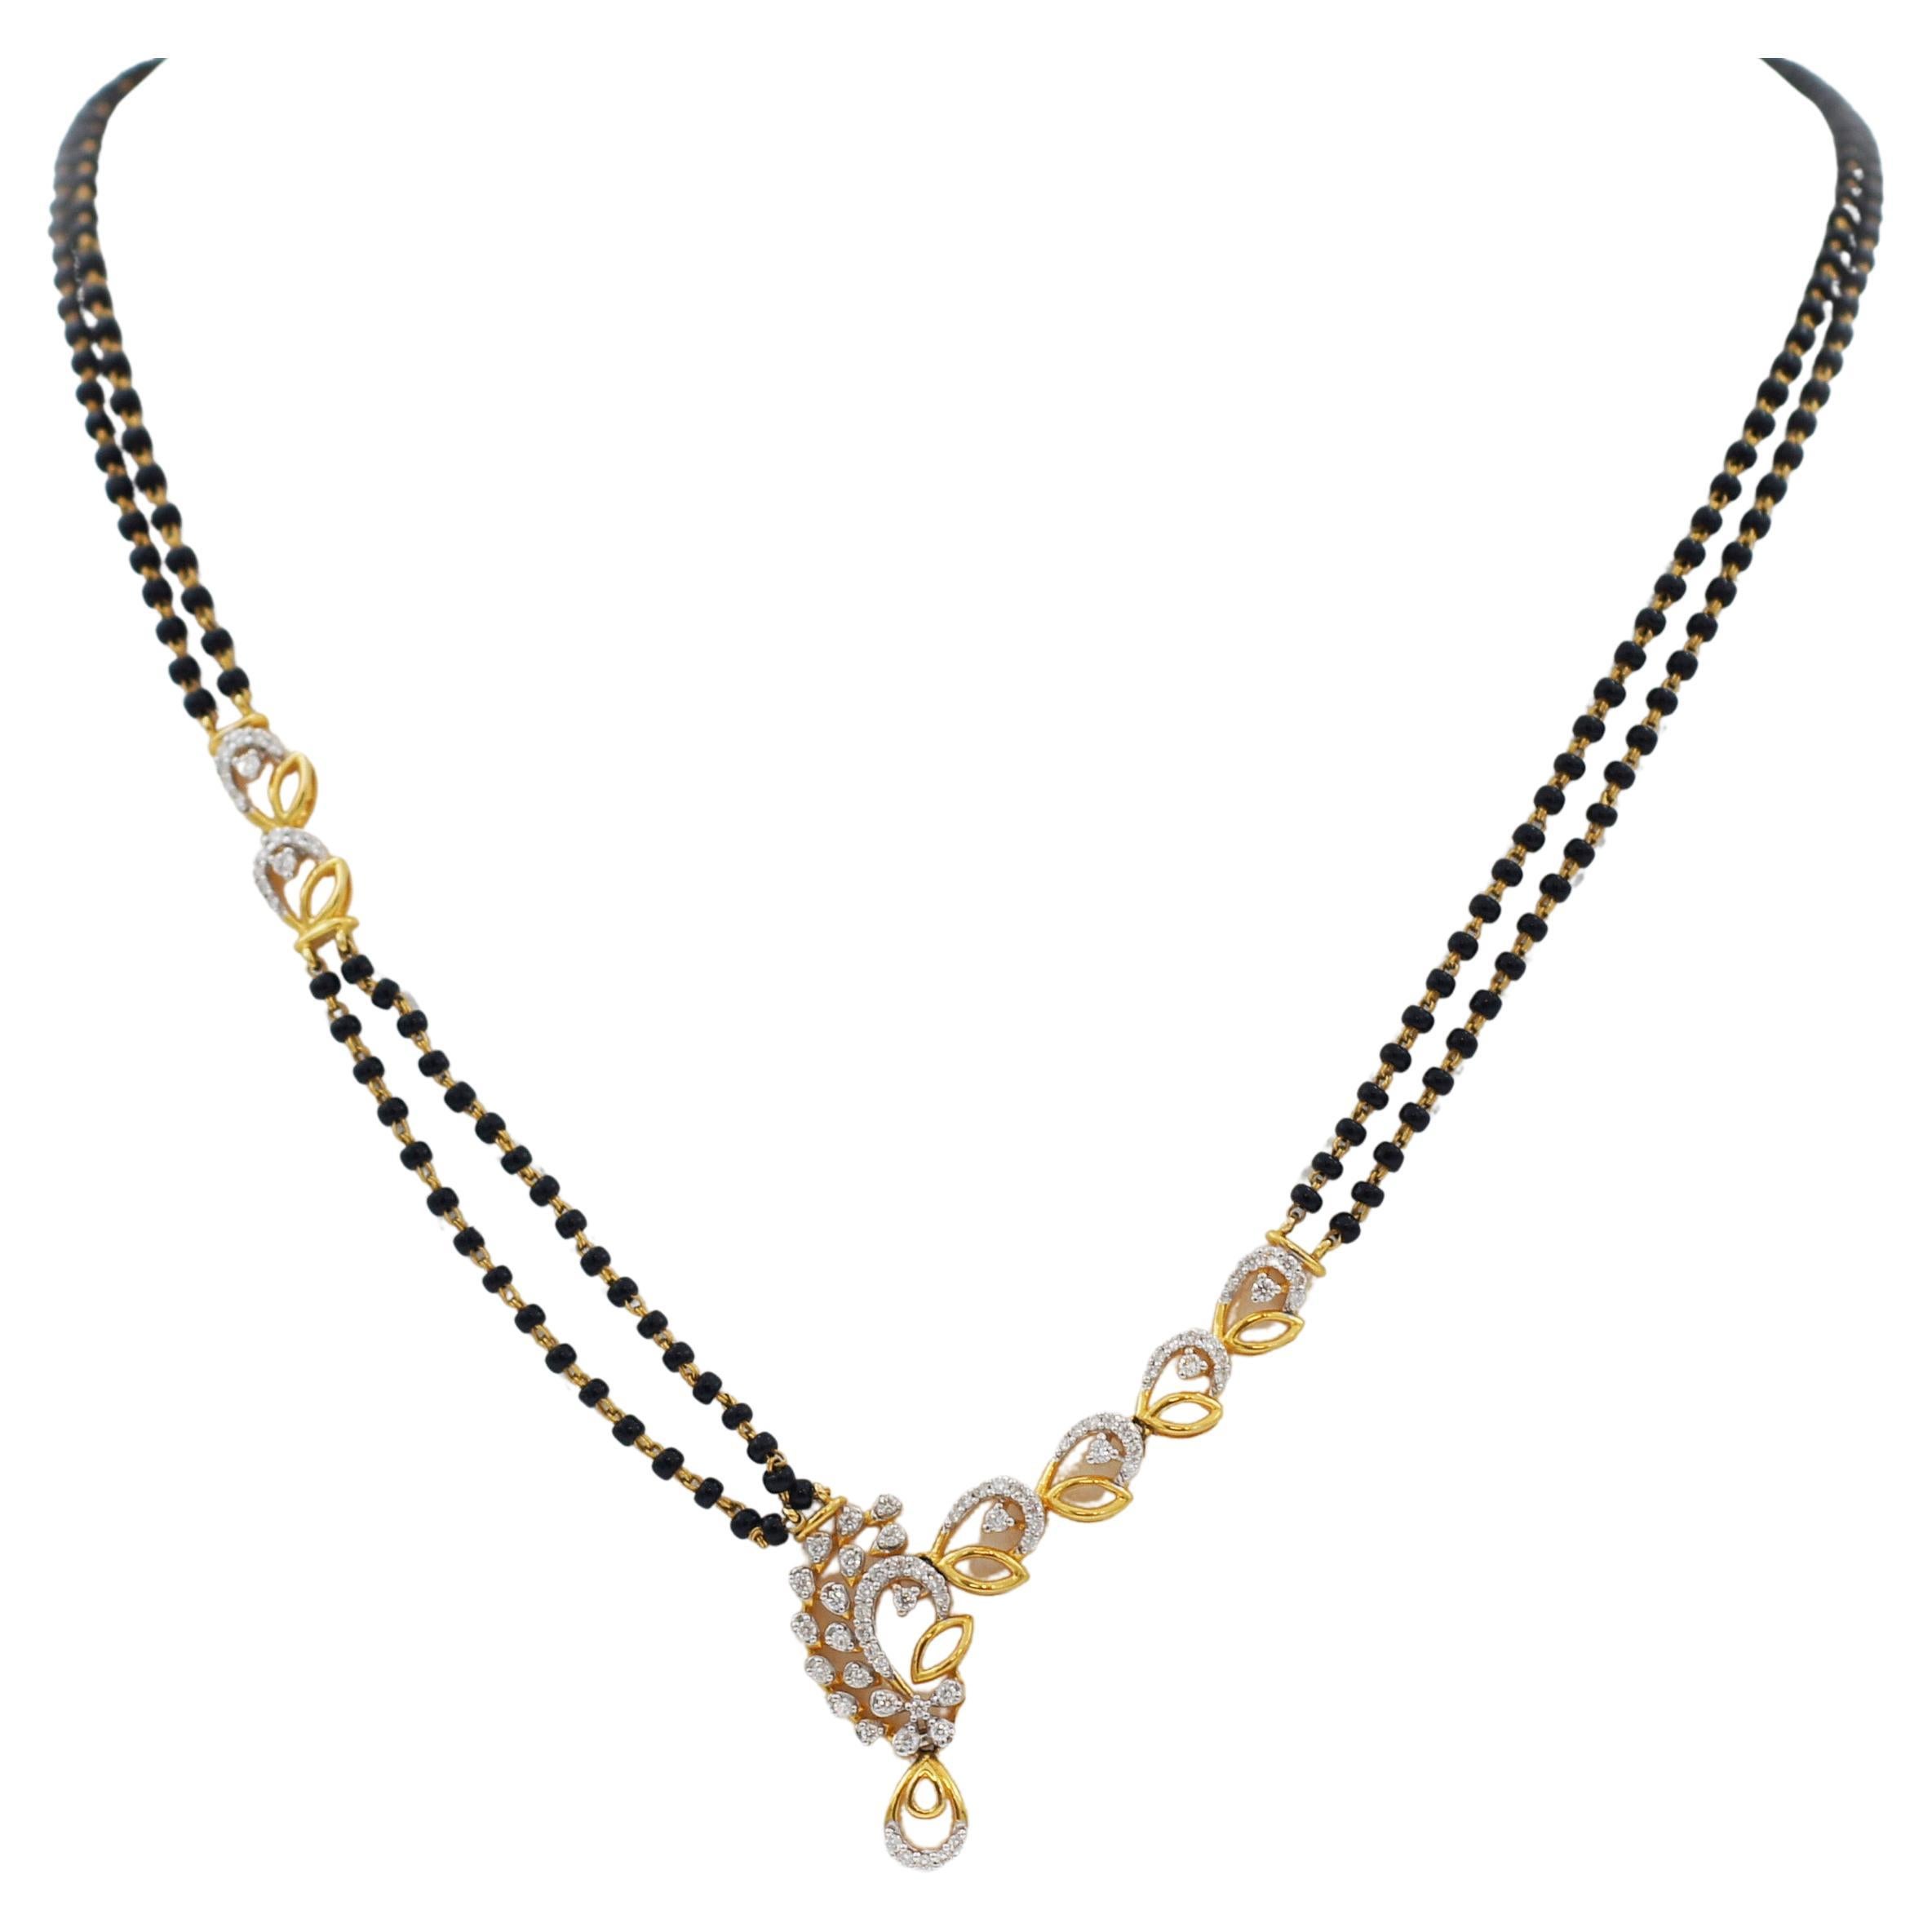 Mangalsutra, collier indien en or jaune 22 carats, diamants et perles noires